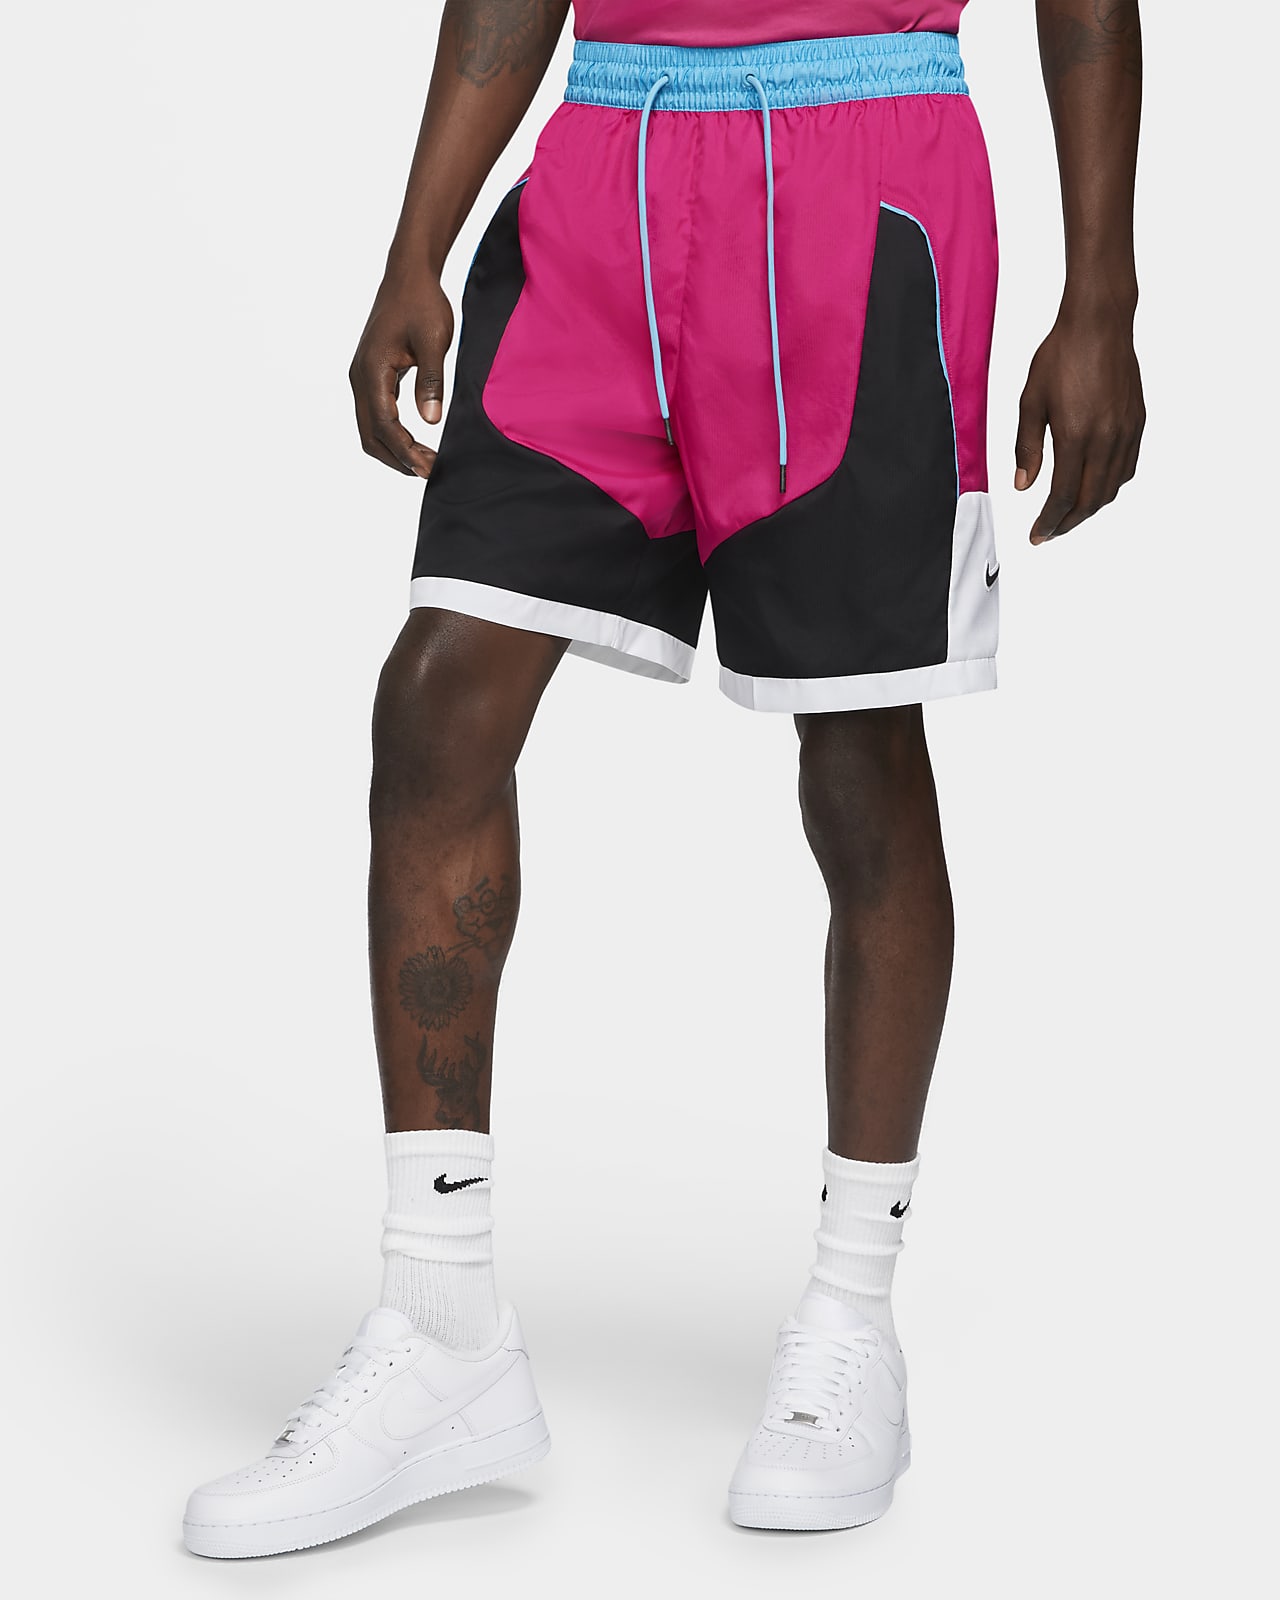 Nike Throwback Men's Basketball Shorts 